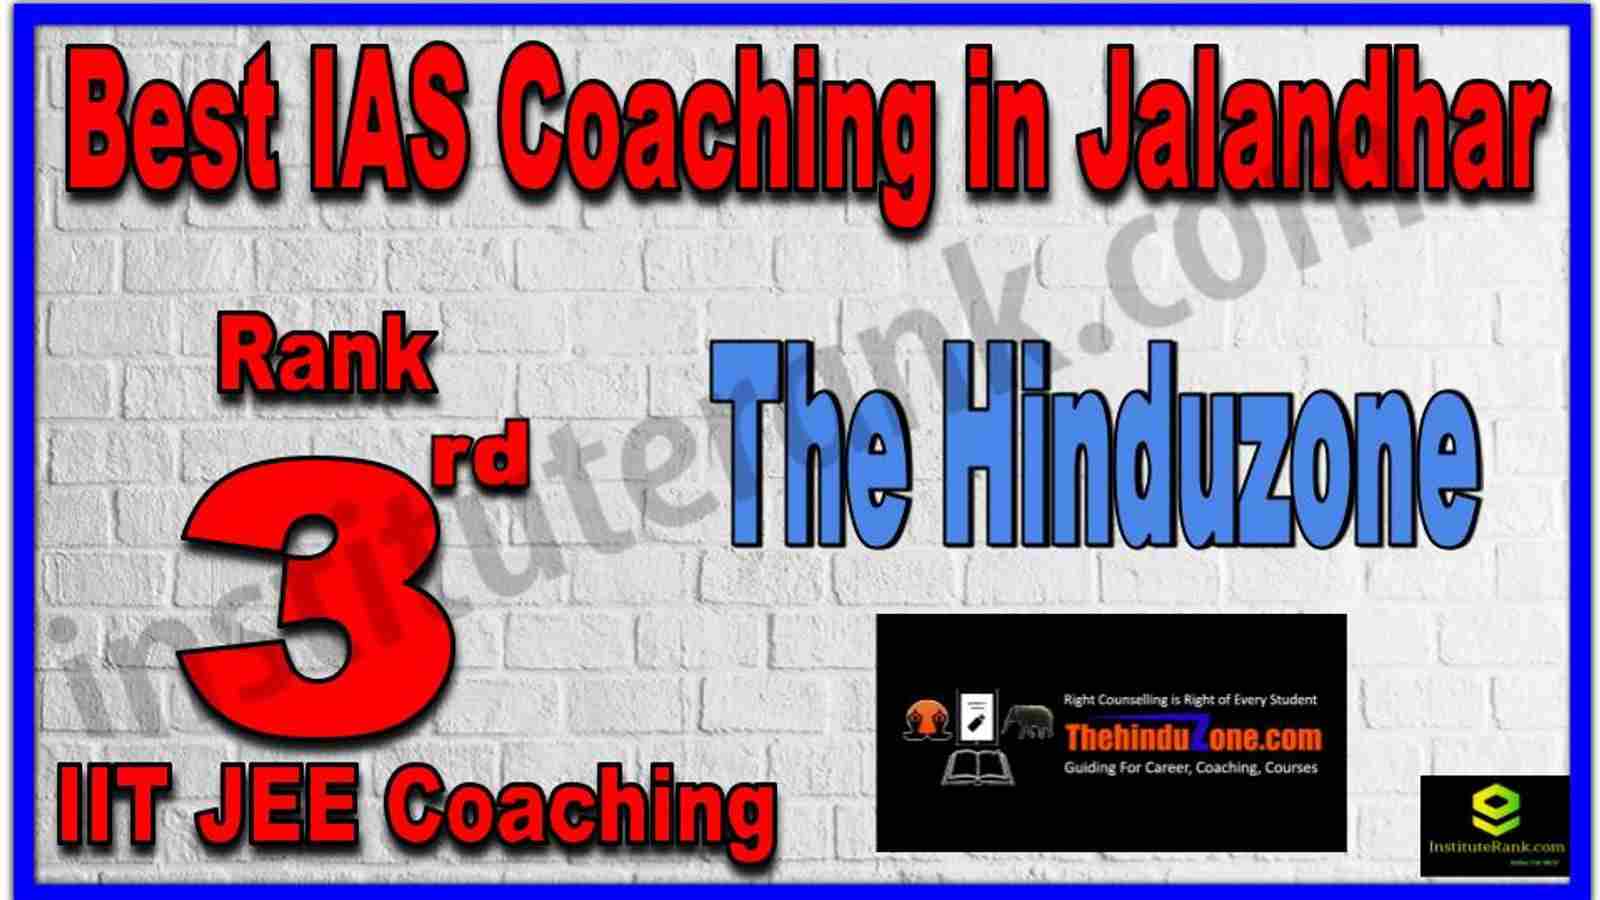 Rank 3rd Best IAS Coaching in Jalandhar